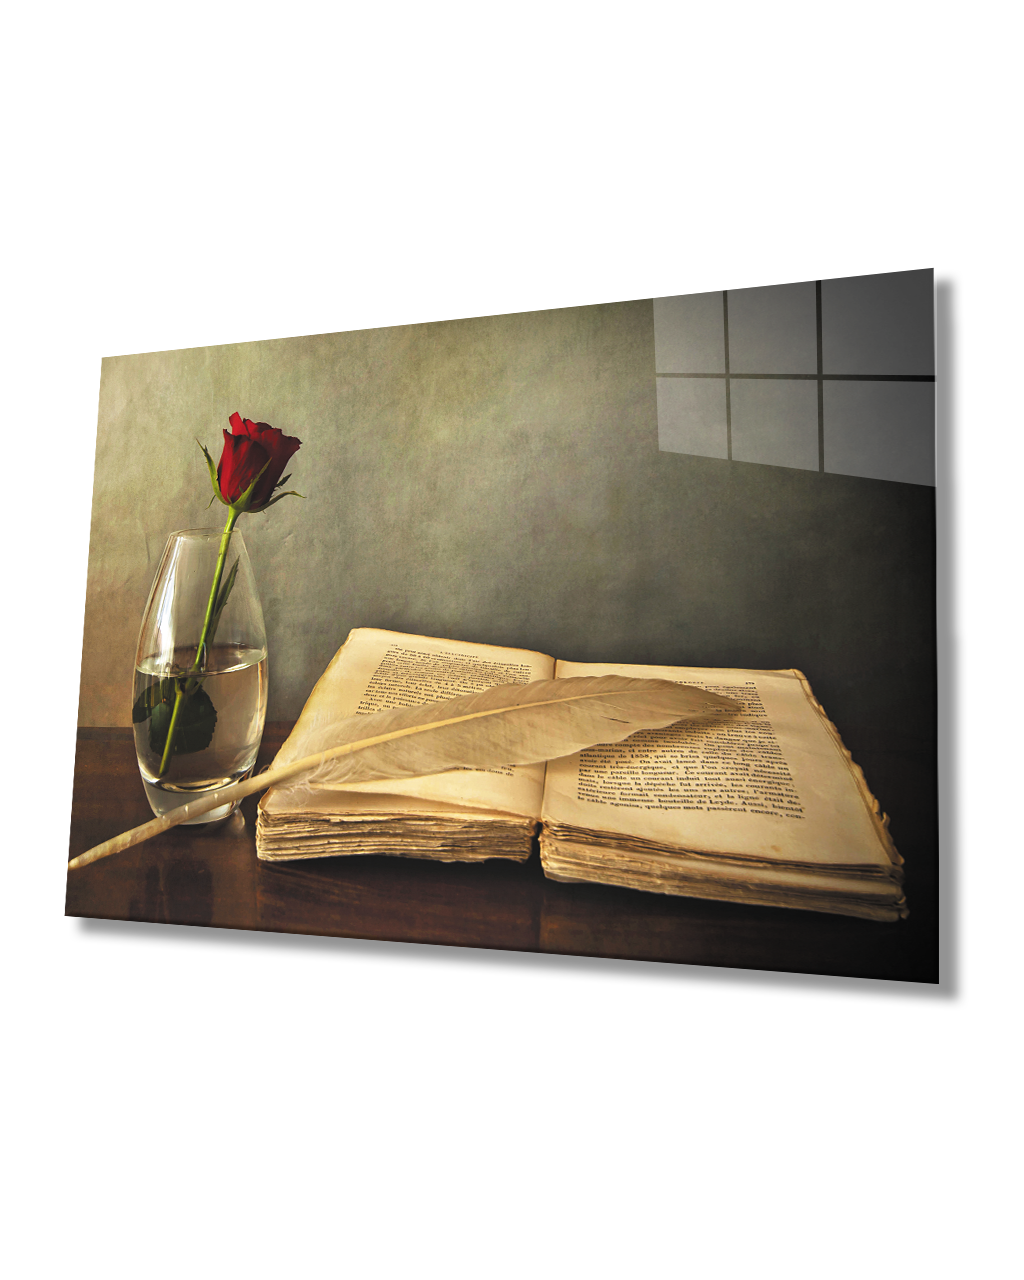 Kırmızı Gül Ve kitap  Cam Tablo  4mm Dayanıklı Temperli Cam Red Rose And book Glass Table 4mm Durable Tempered Glass